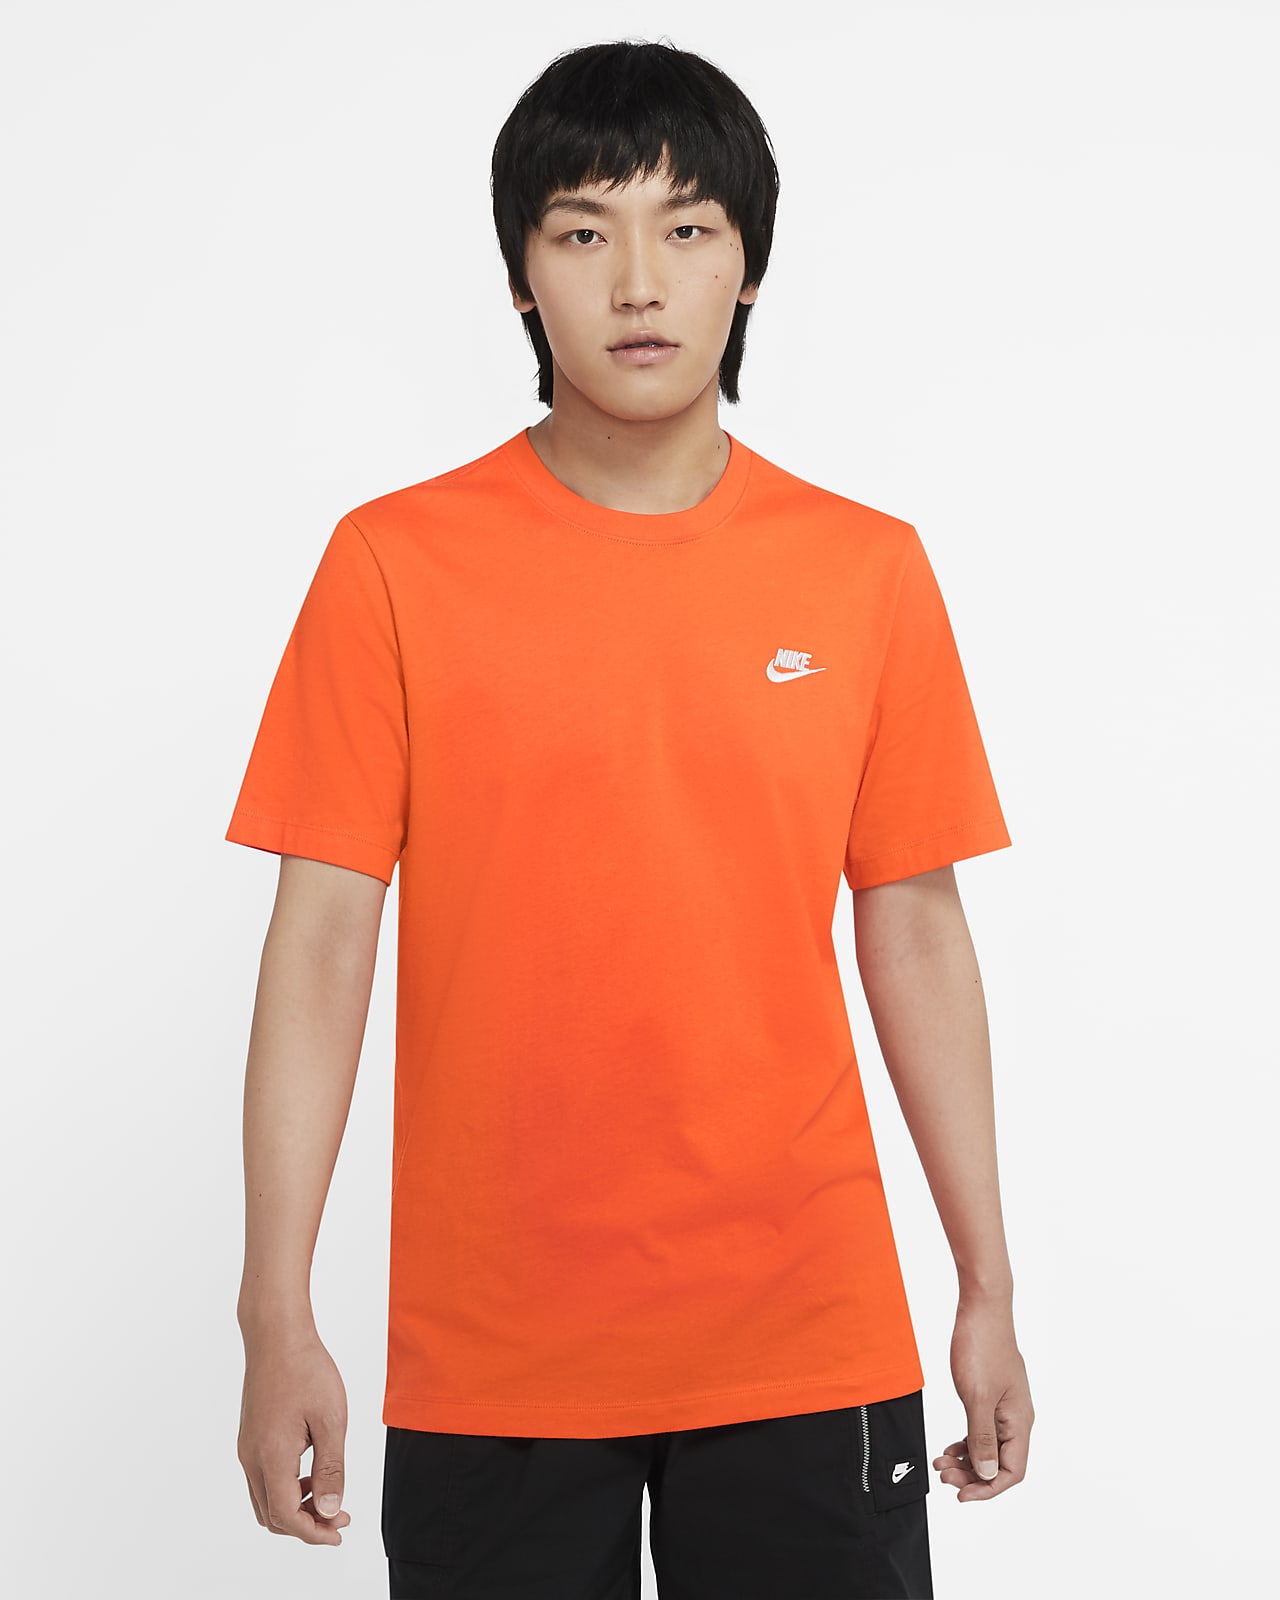 orange t shirt australia